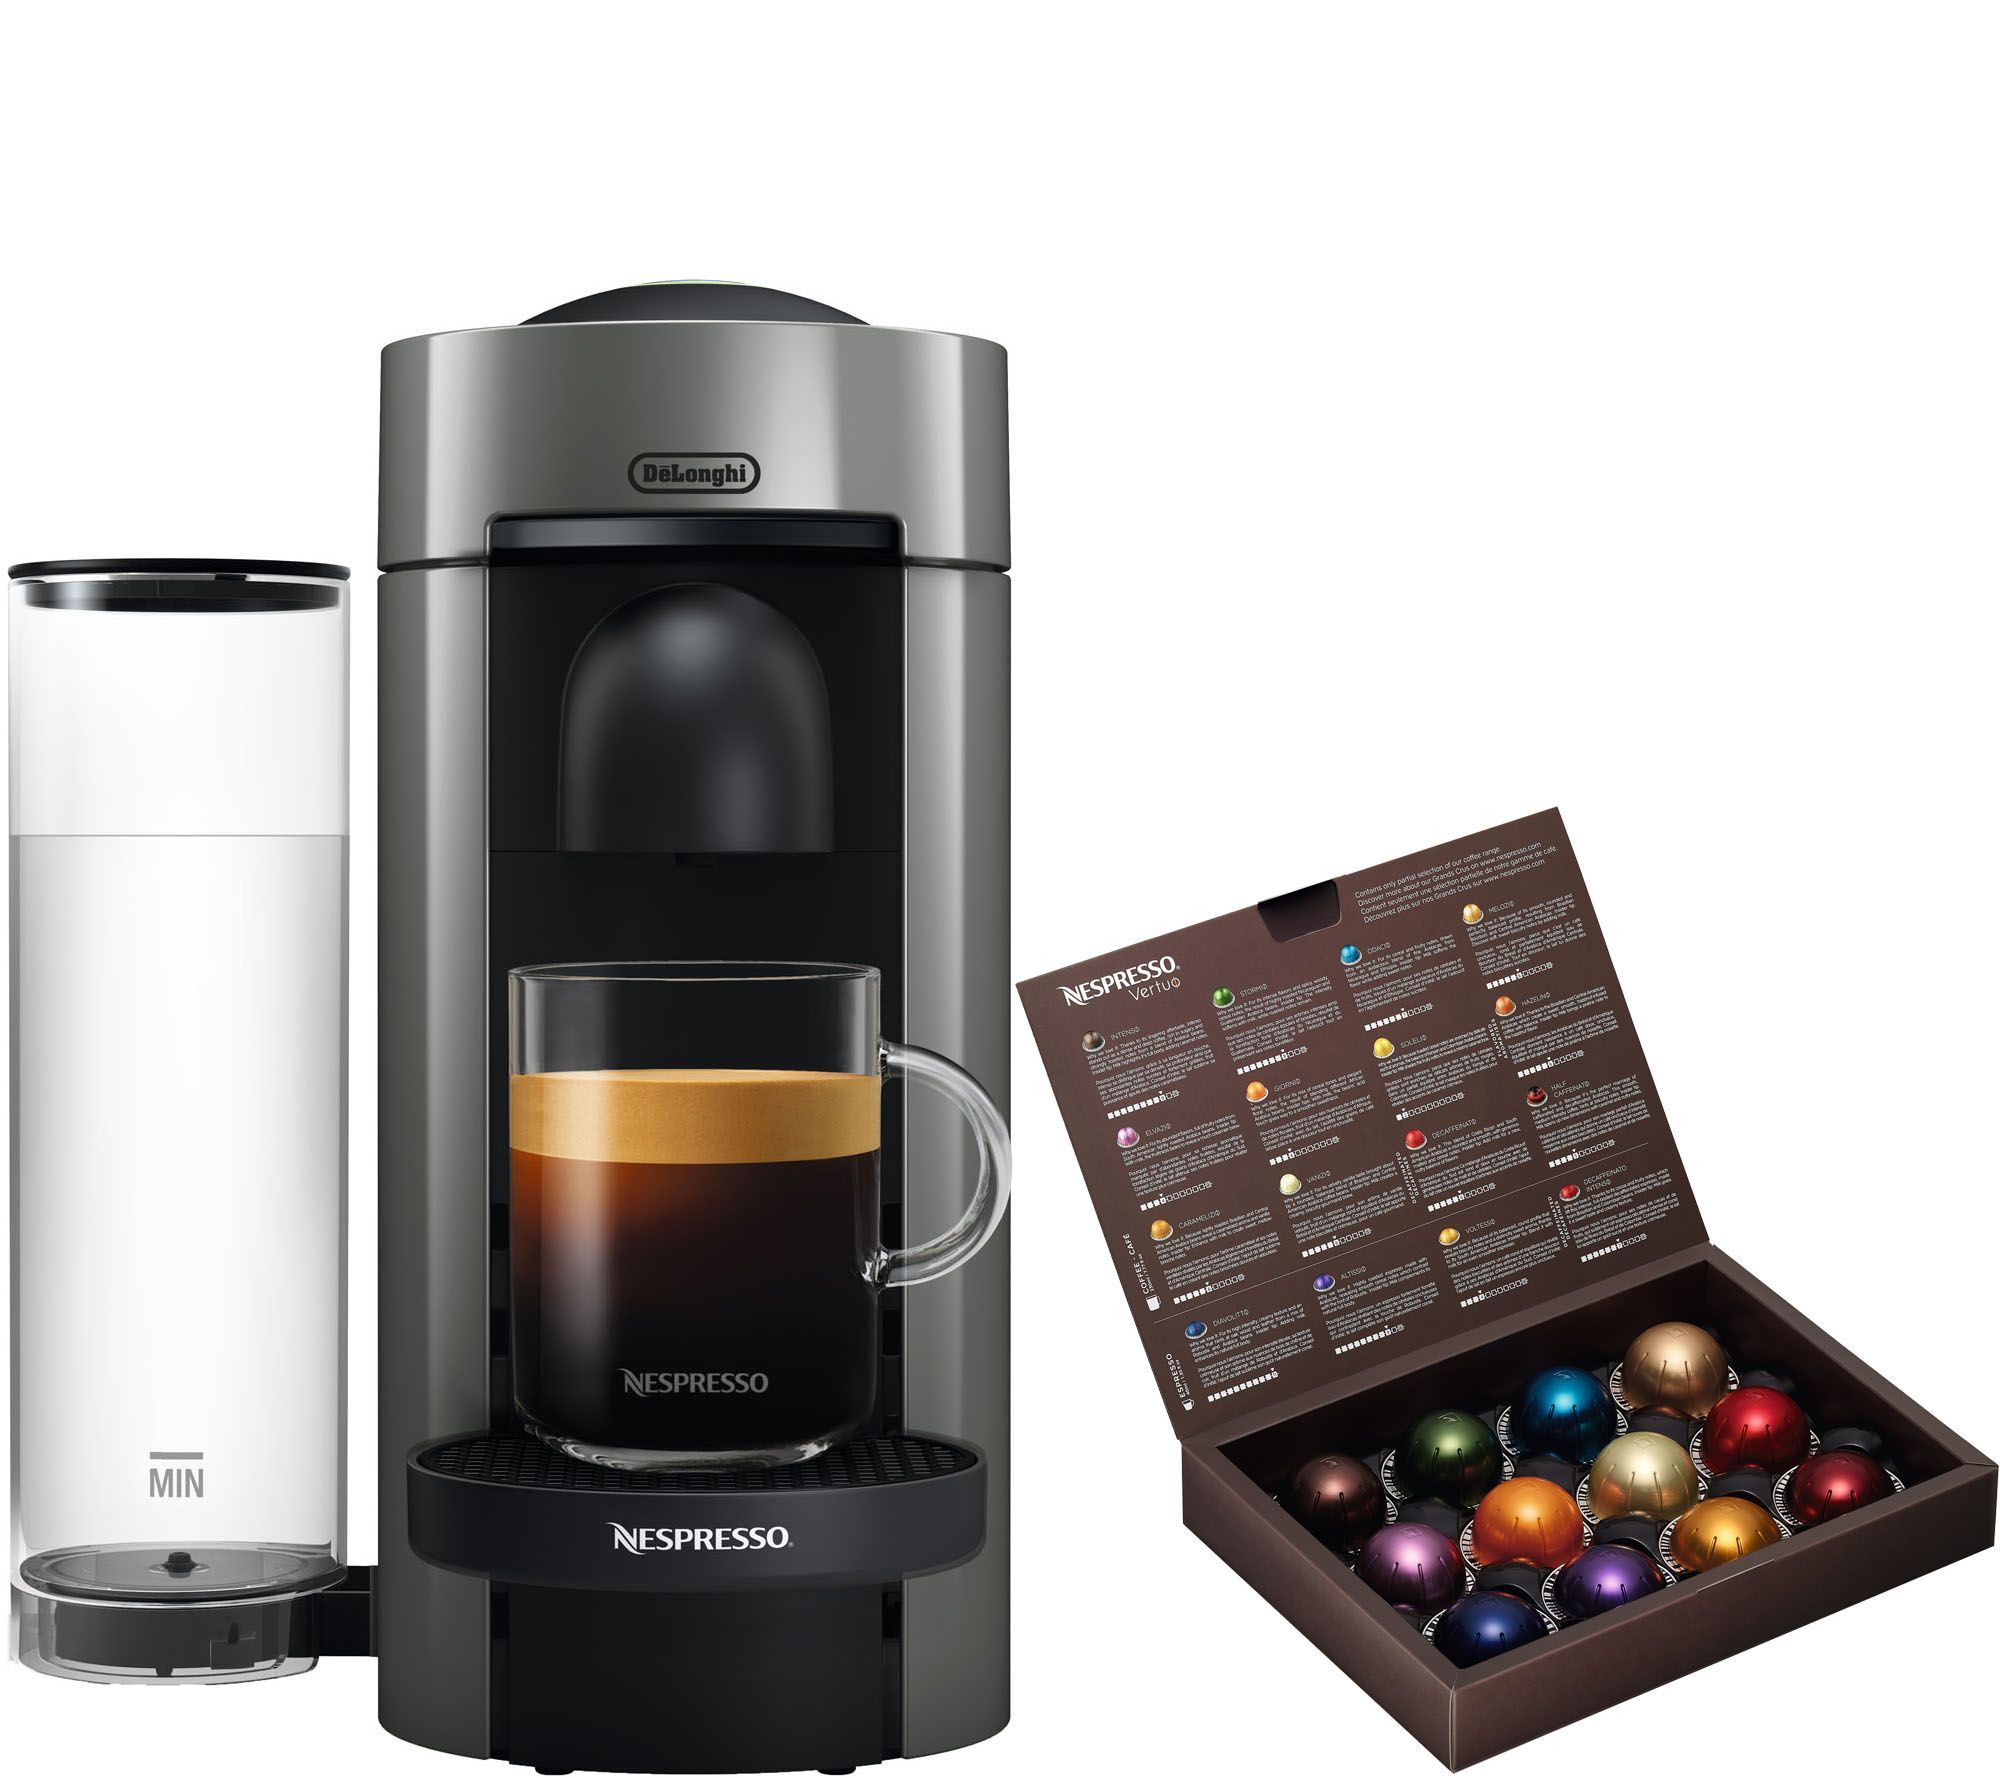 Nespresso Vertuo Plus Coffee & Espresso Machineby DeLonghi - QVC.com | QVC